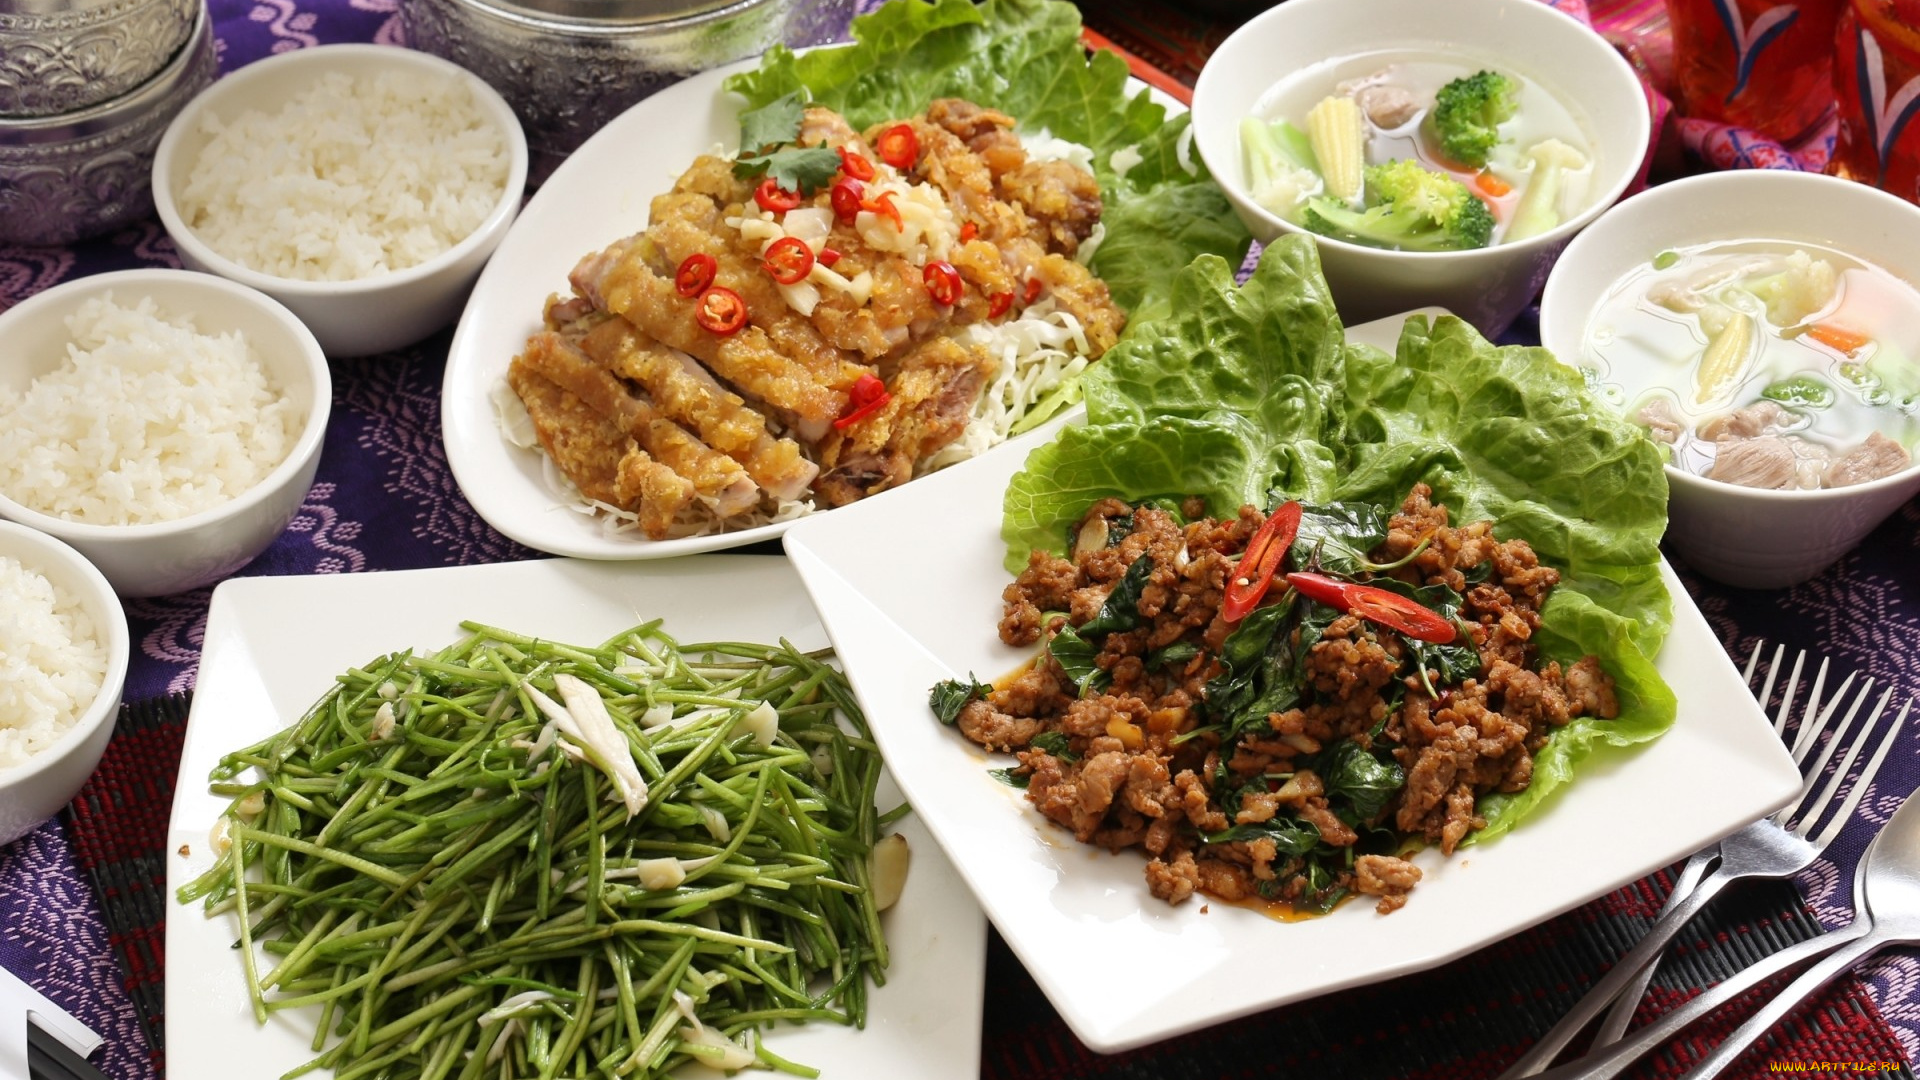 еда, разное, ассорти, блюда, тайваньская, кухня, мясо, салат, овощи, рис, суп